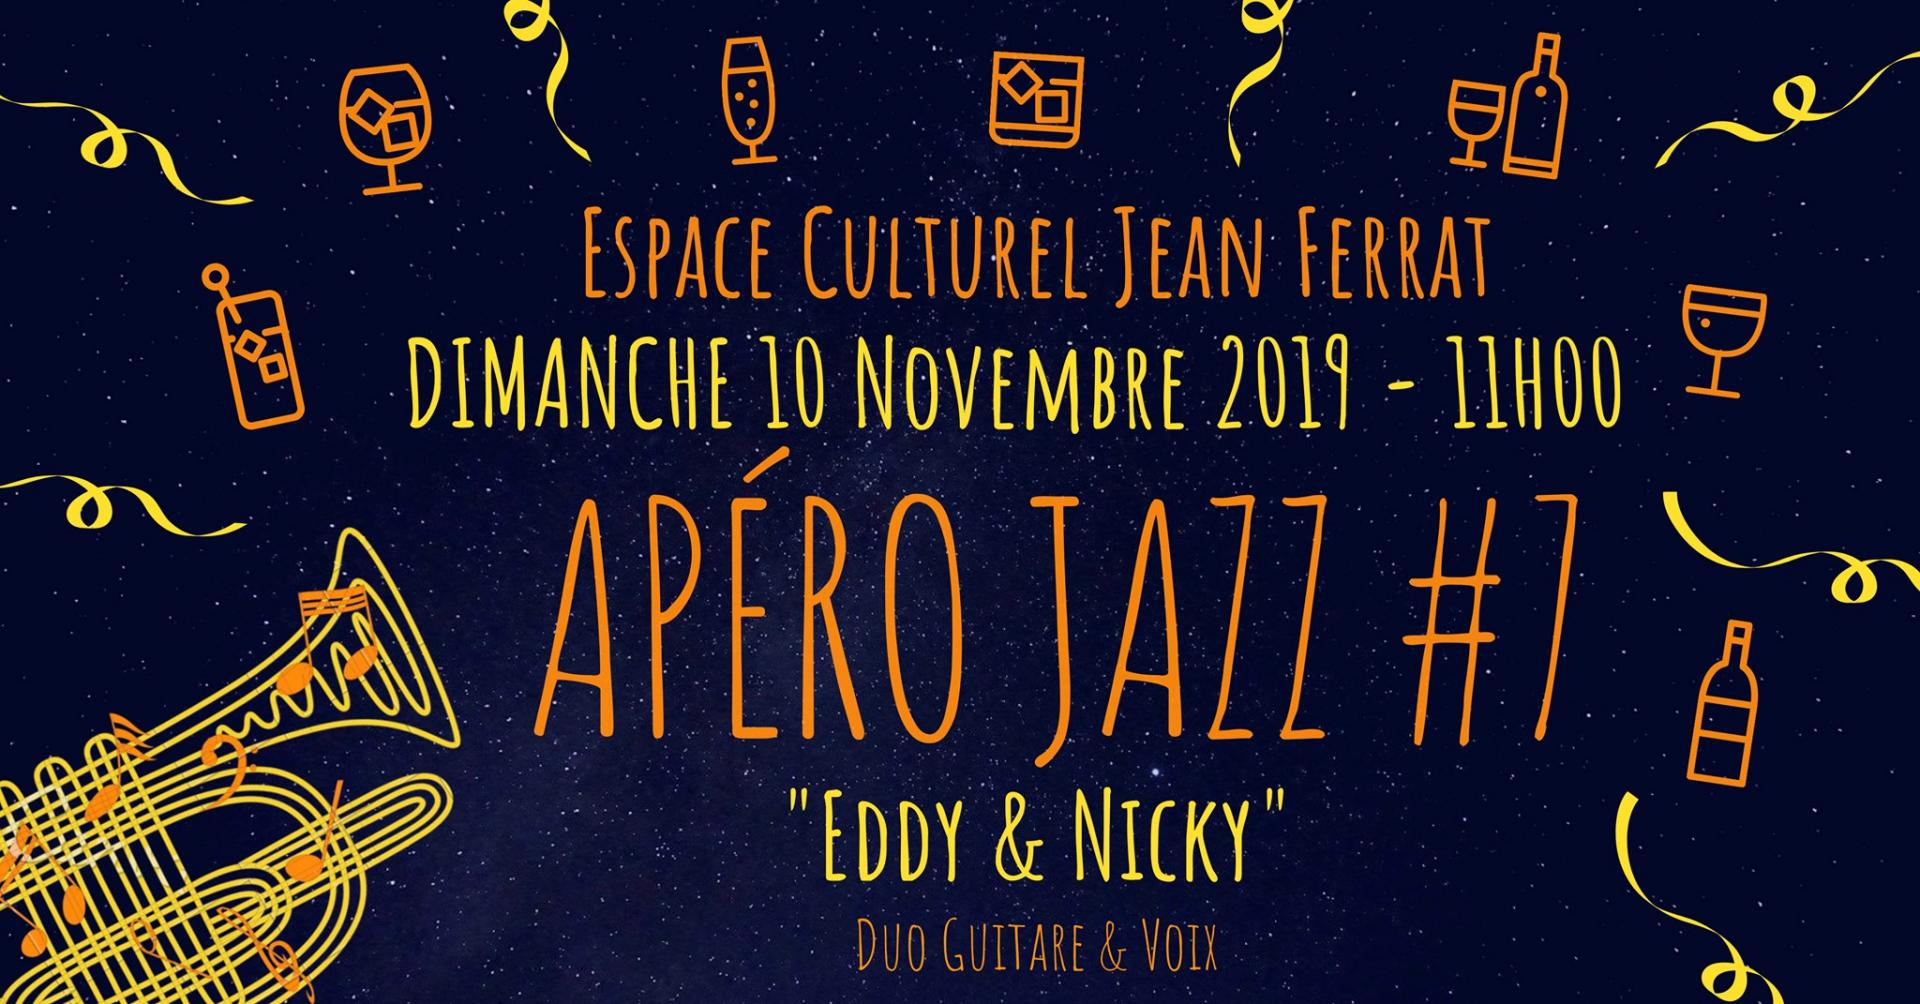 Apéro Jazz #7 - Eddy & Nicky